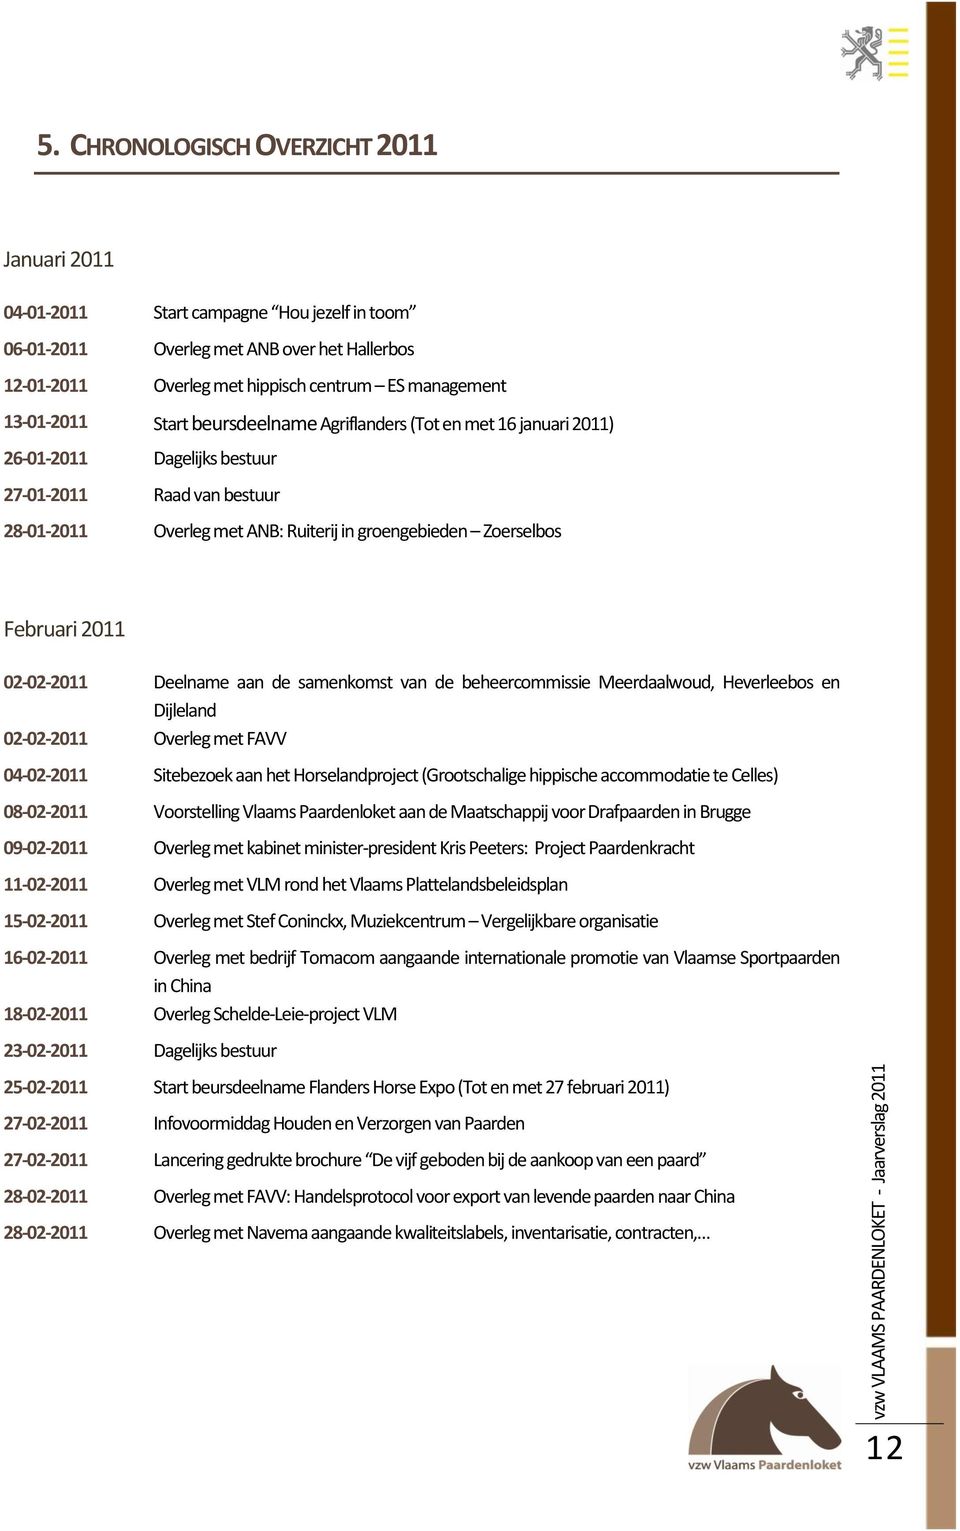 Februari 2011 02-02-2011 Deelname aan de samenkomst van de beheercommissie Meerdaalwoud, Heverleebos en Dijleland 02-02-2011 Overleg met FAVV 04-02-2011 Sitebezoek aan het Horselandproject